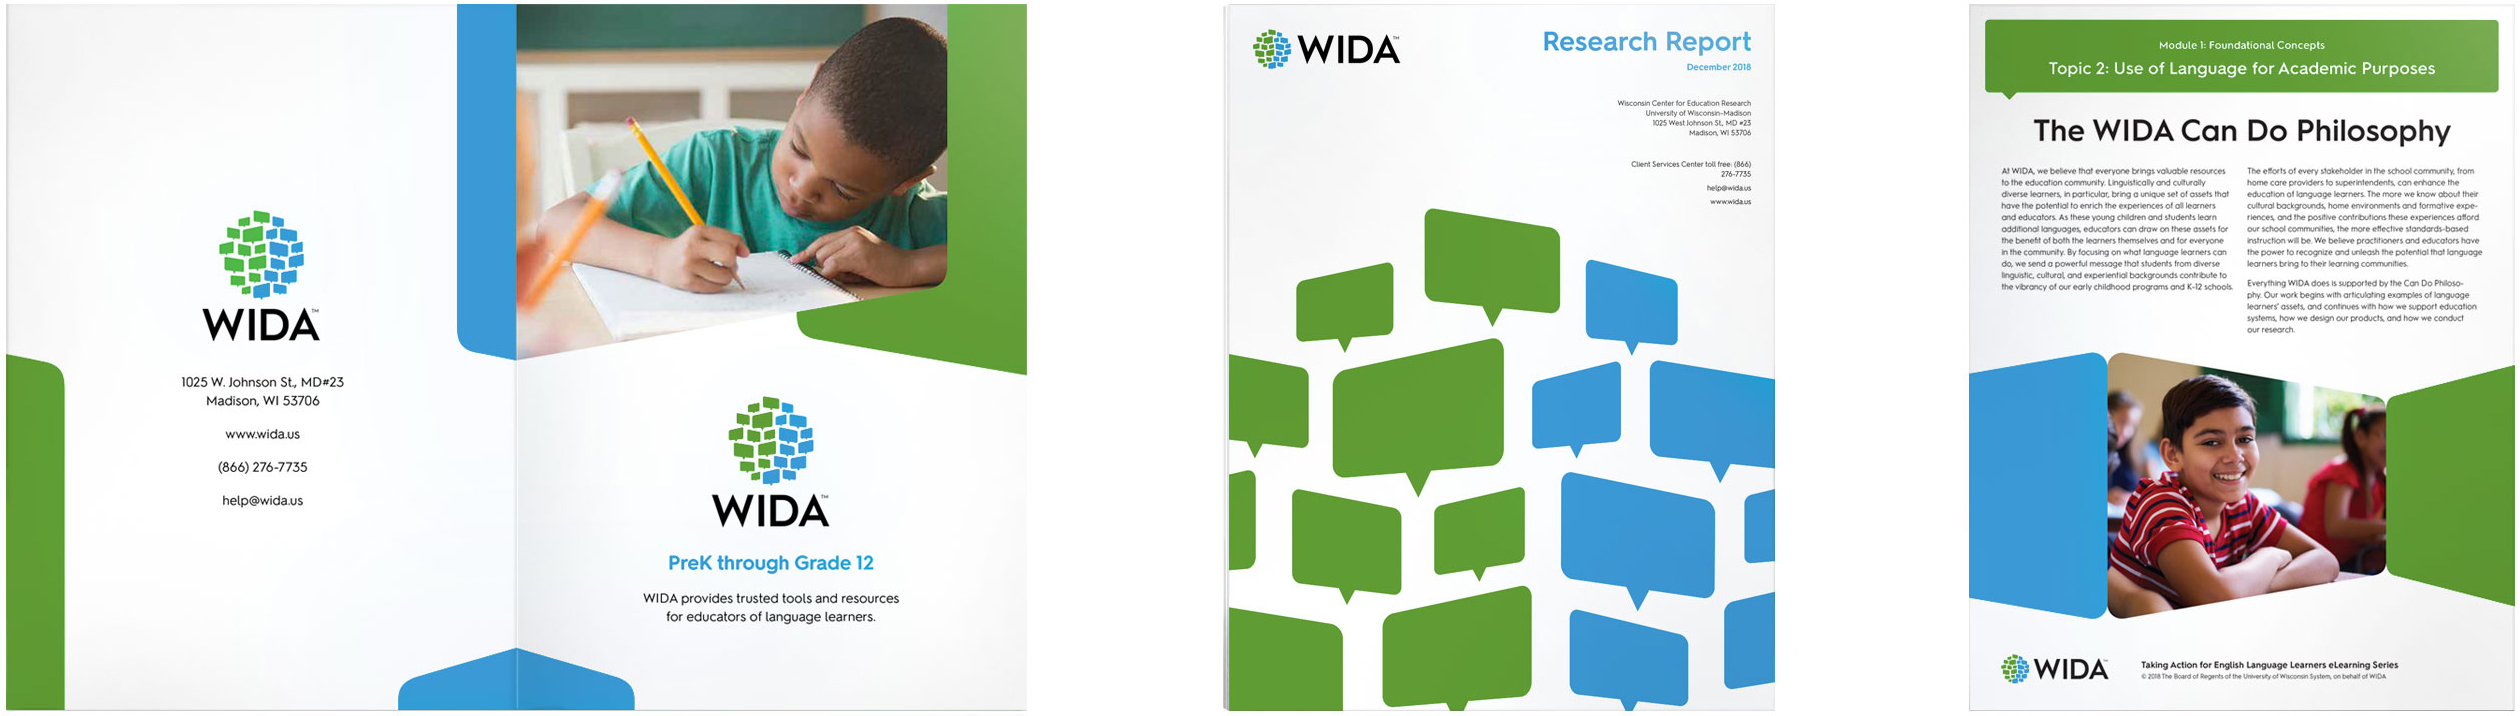 WIDA publications and brochures